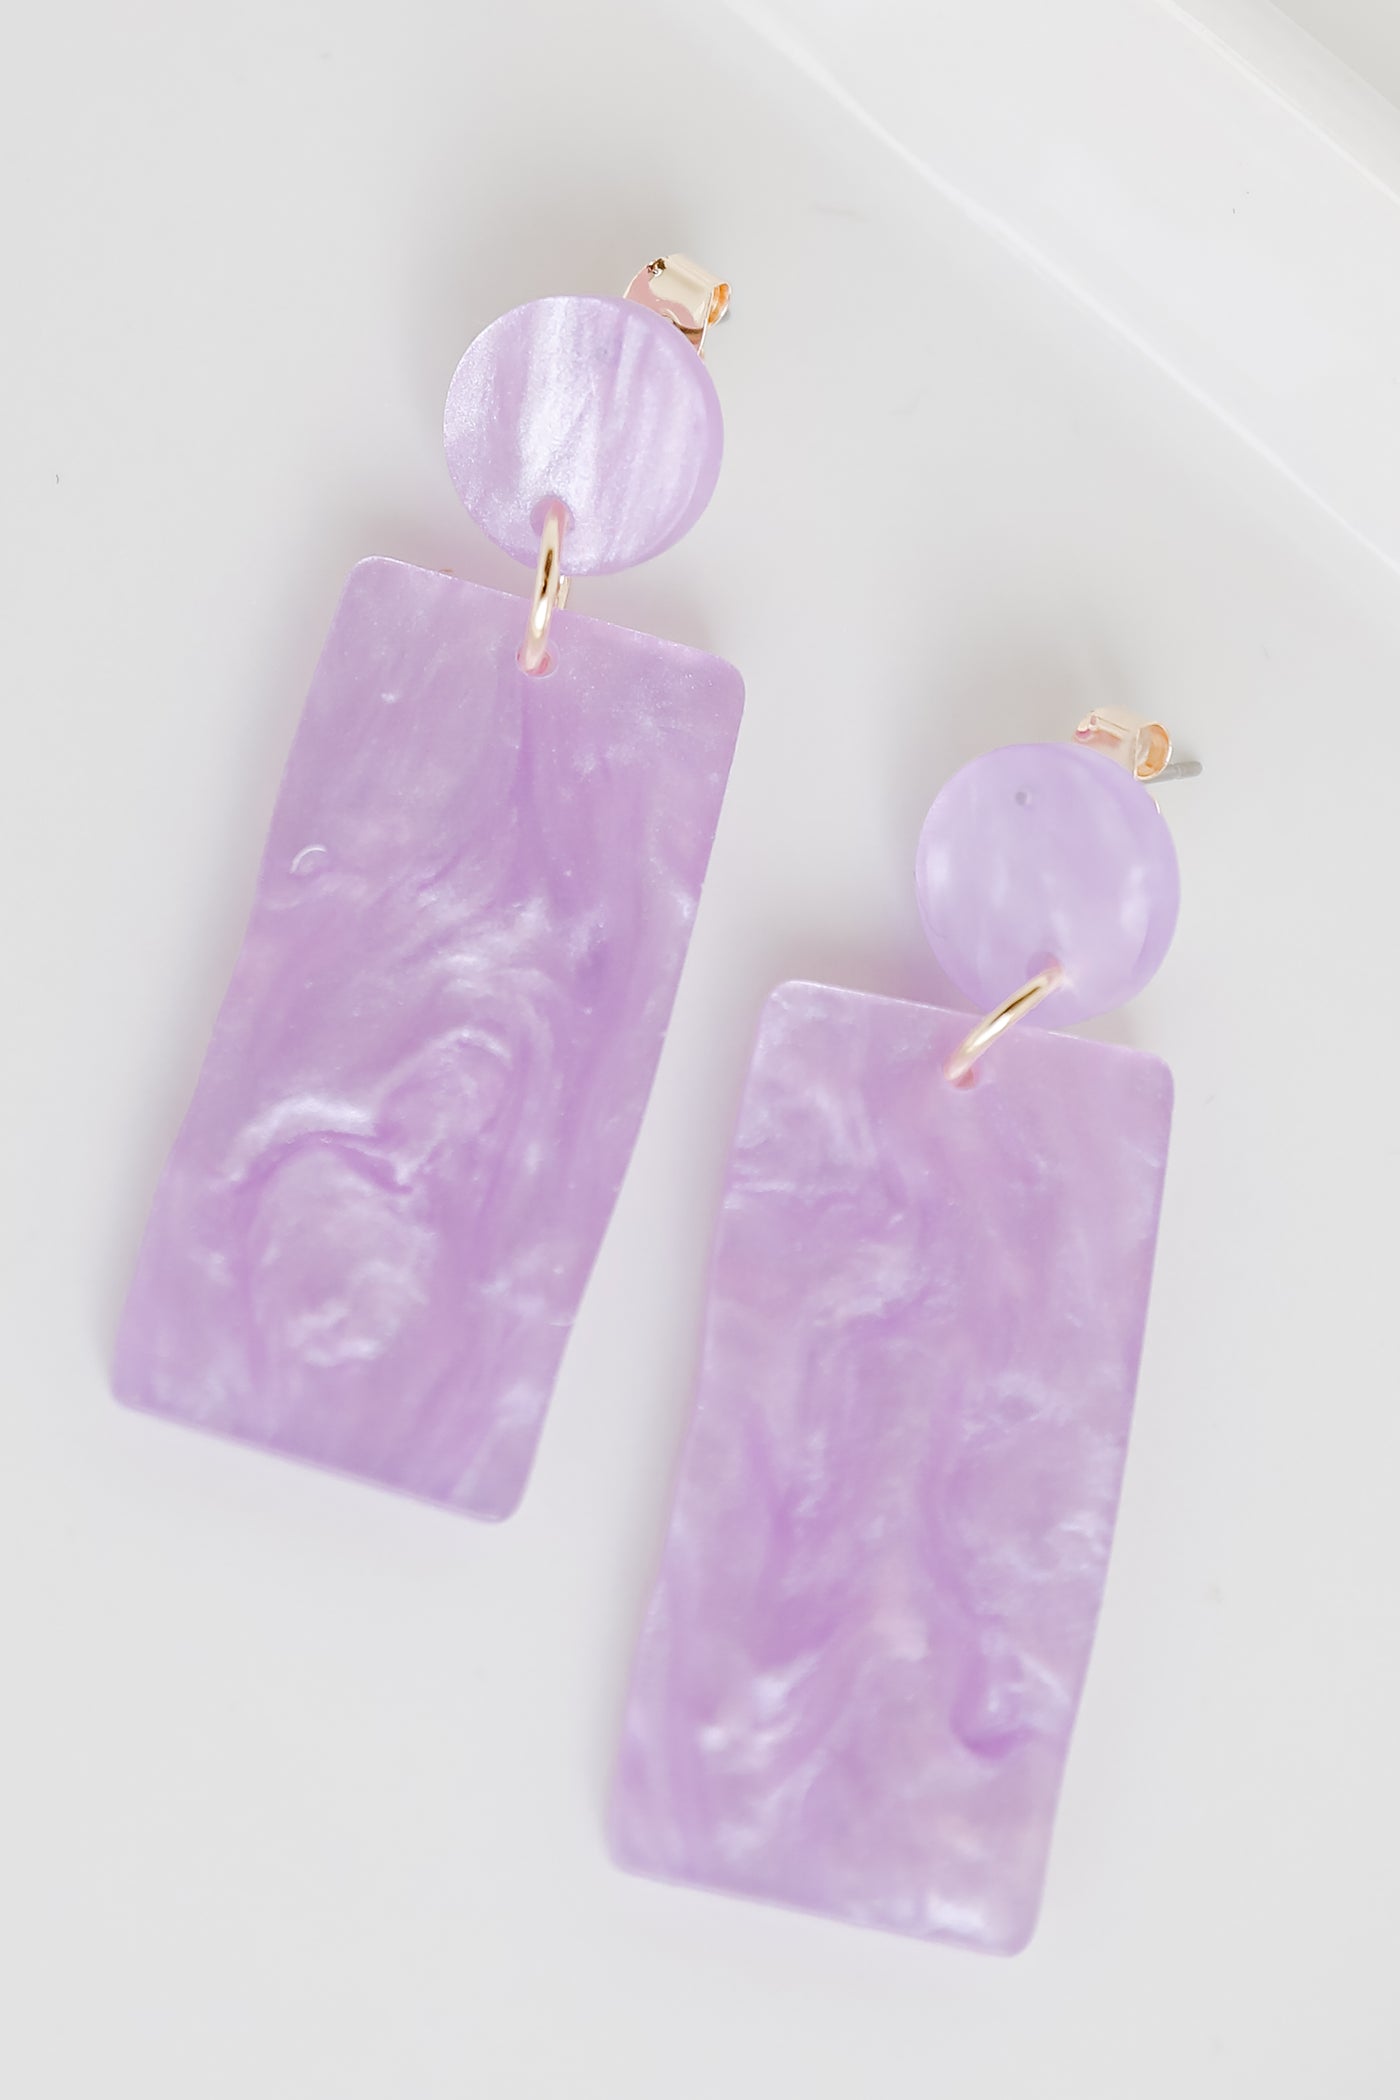 Acrylic Statement Earrings in purple flat lay